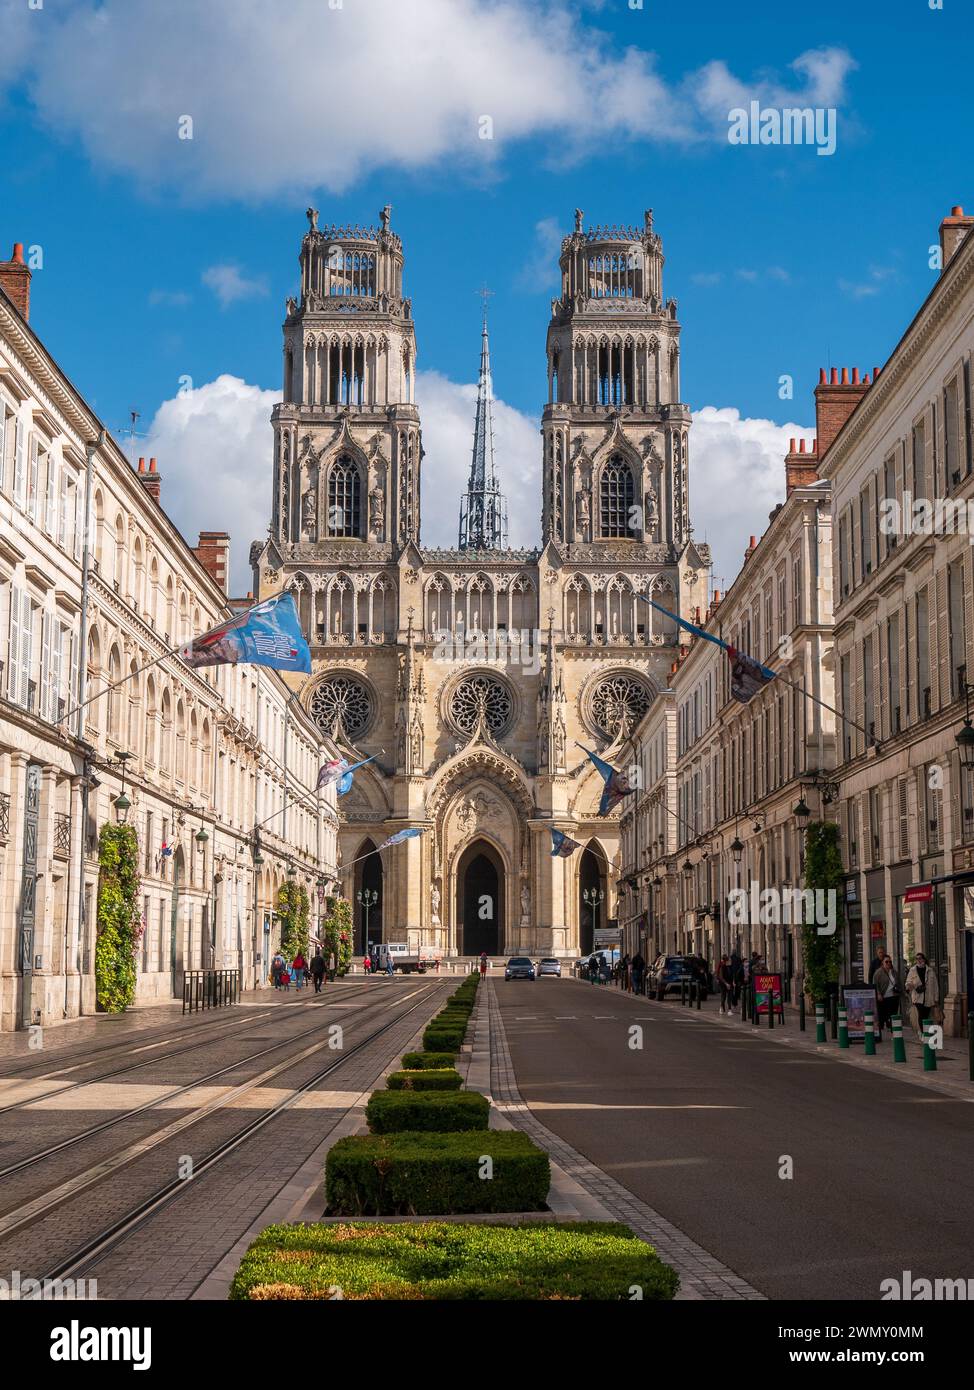 Orleans, Frankreich - 6. Oktober 2021: Die Kathedrale von Orleans, die Fassade und die Straße mit einigen Gebäuden darstellt Stockfoto